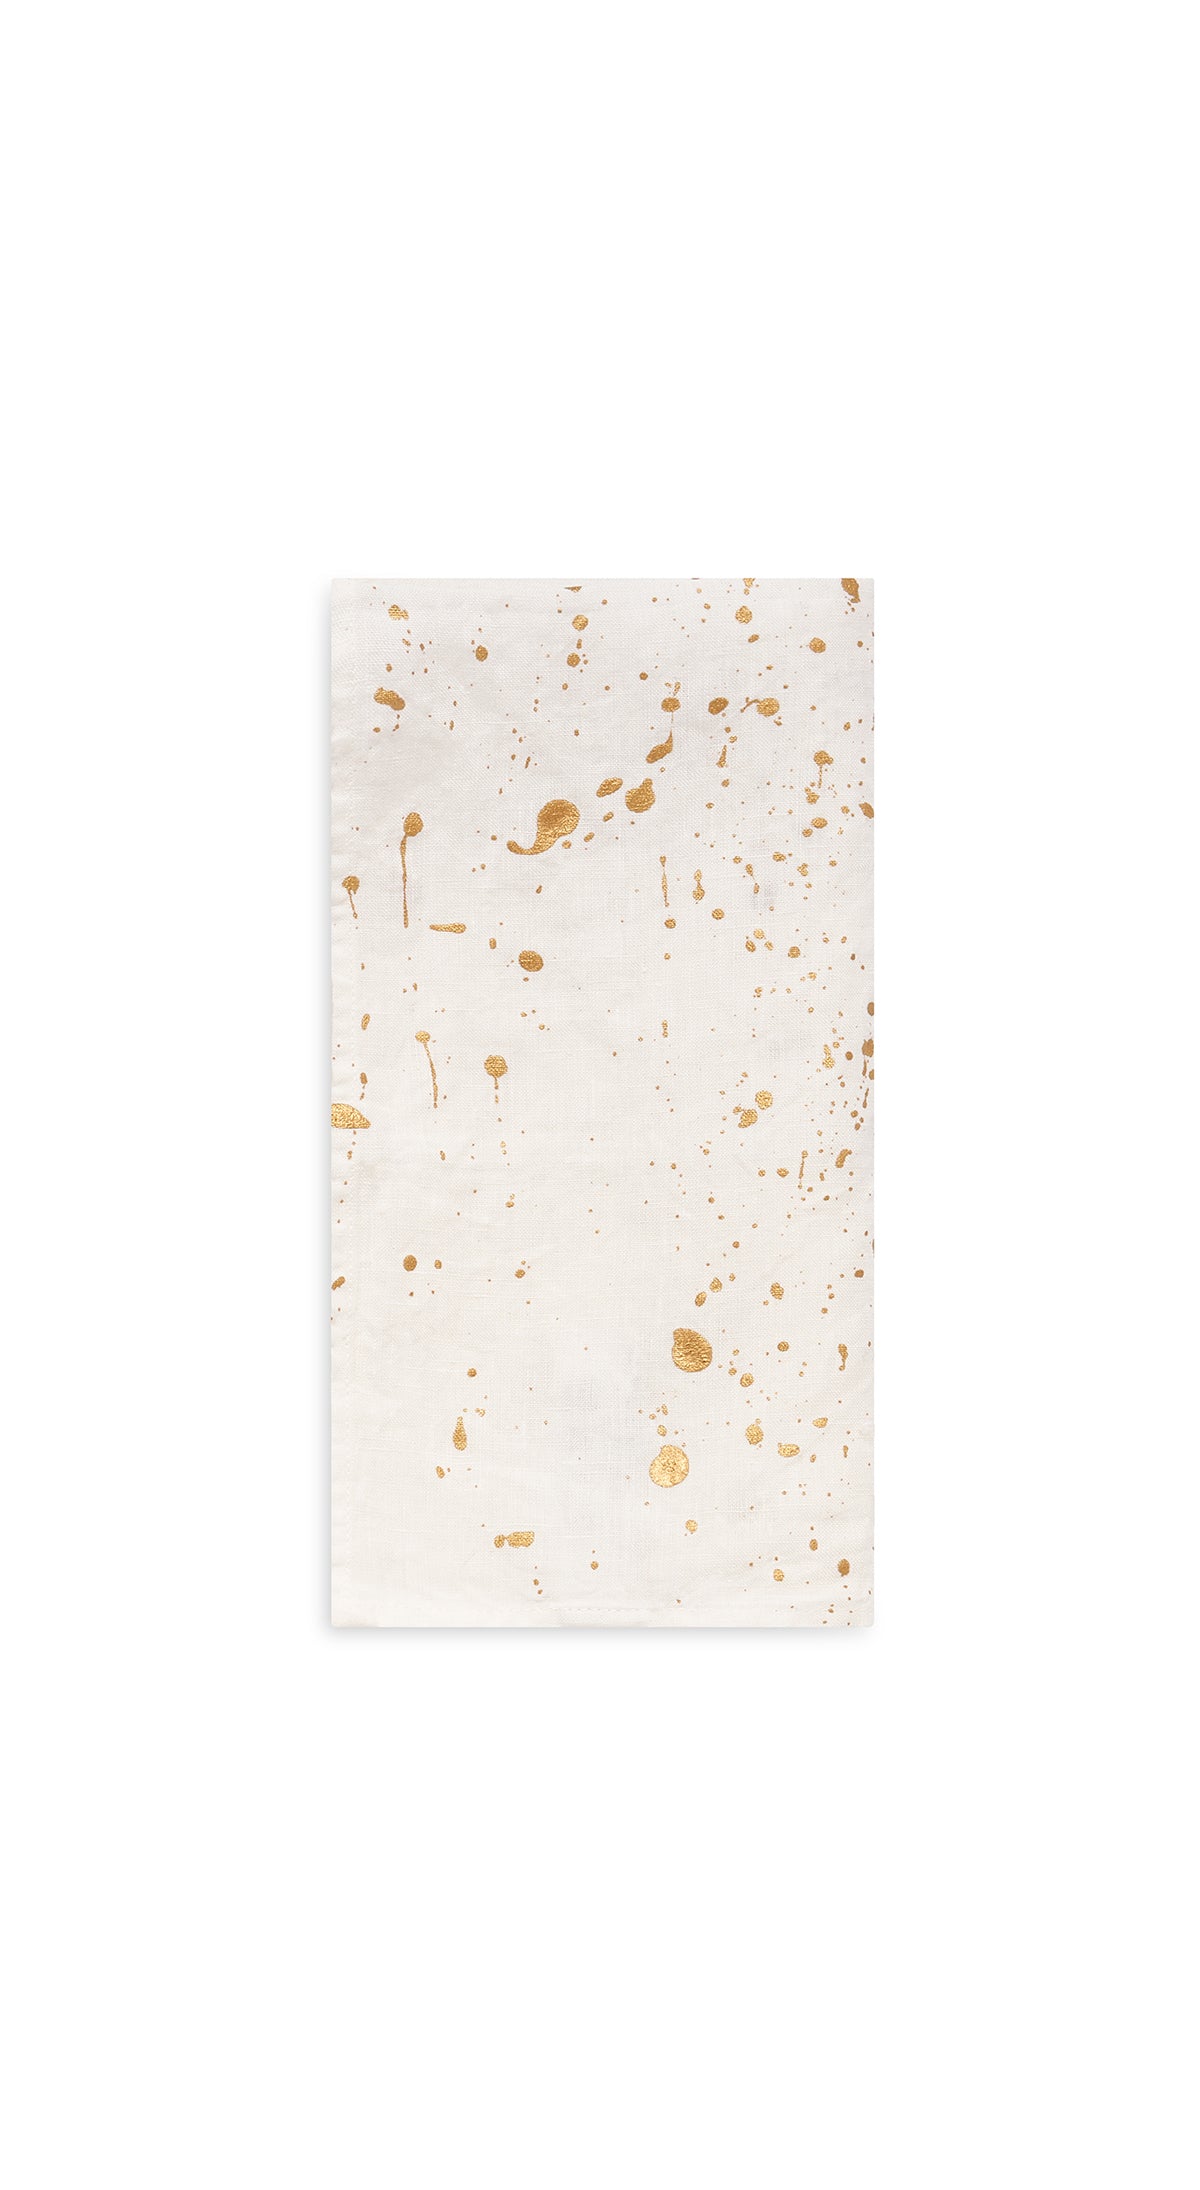 Splatter Linen Napkin in White with Gold, 50x50cm